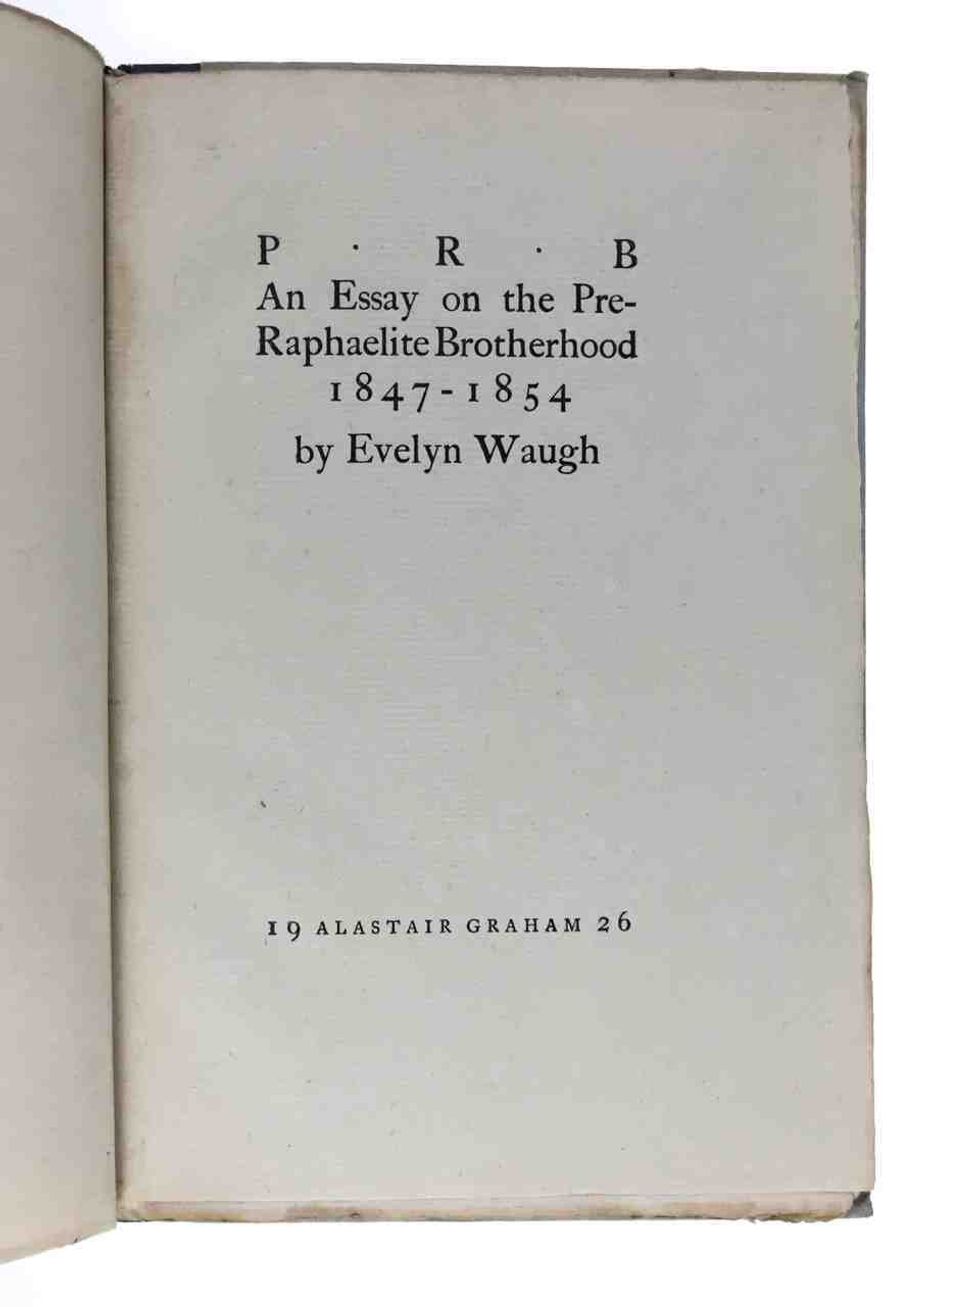 An Essay on the Pre-Raphaelite Brotherhood, 1847-1854